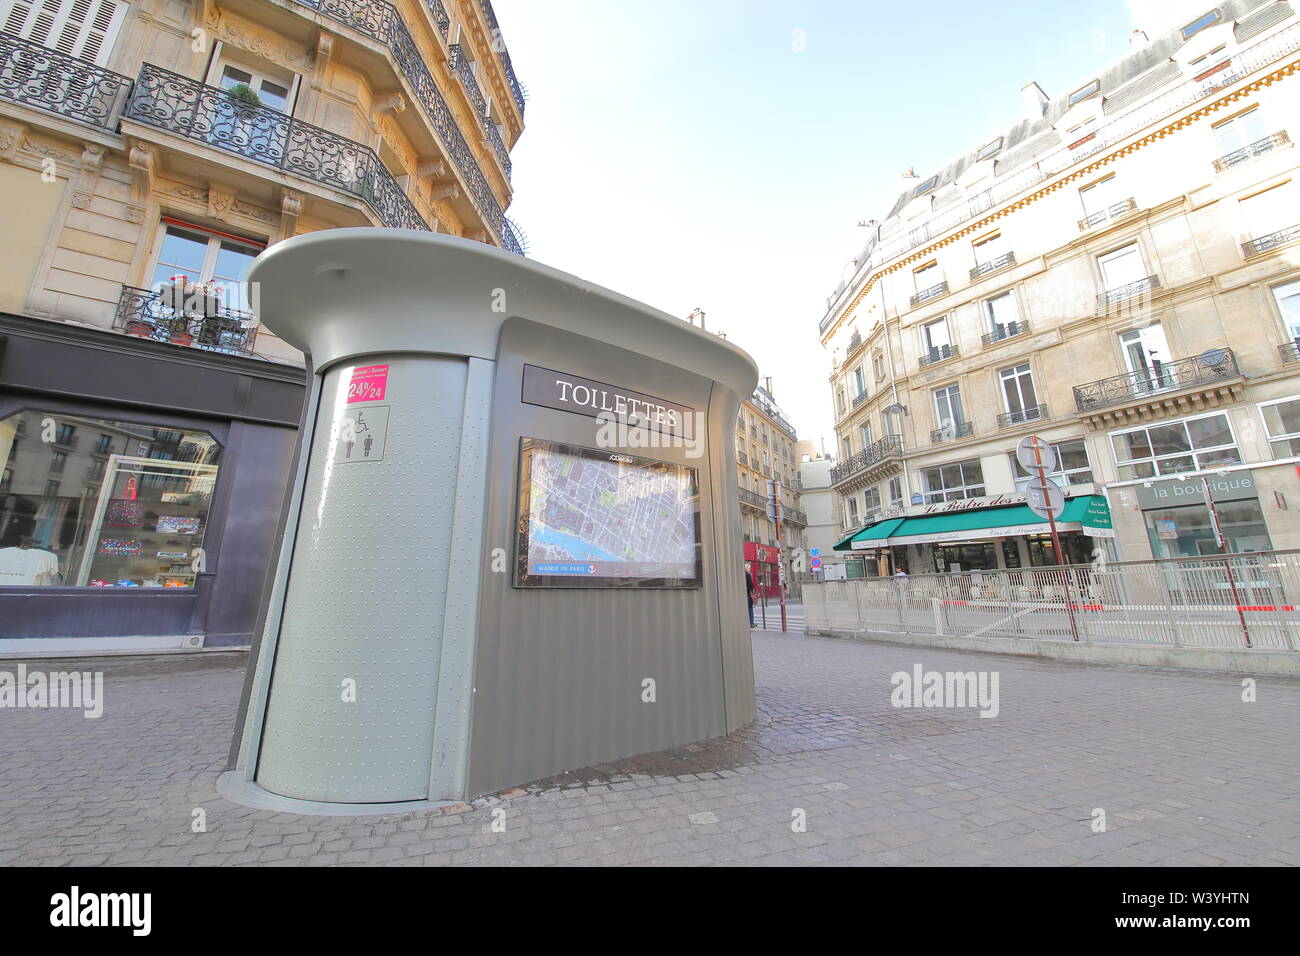 Servizi igienici pubblici nel centro cittadino di Parigi Francia Foto Stock